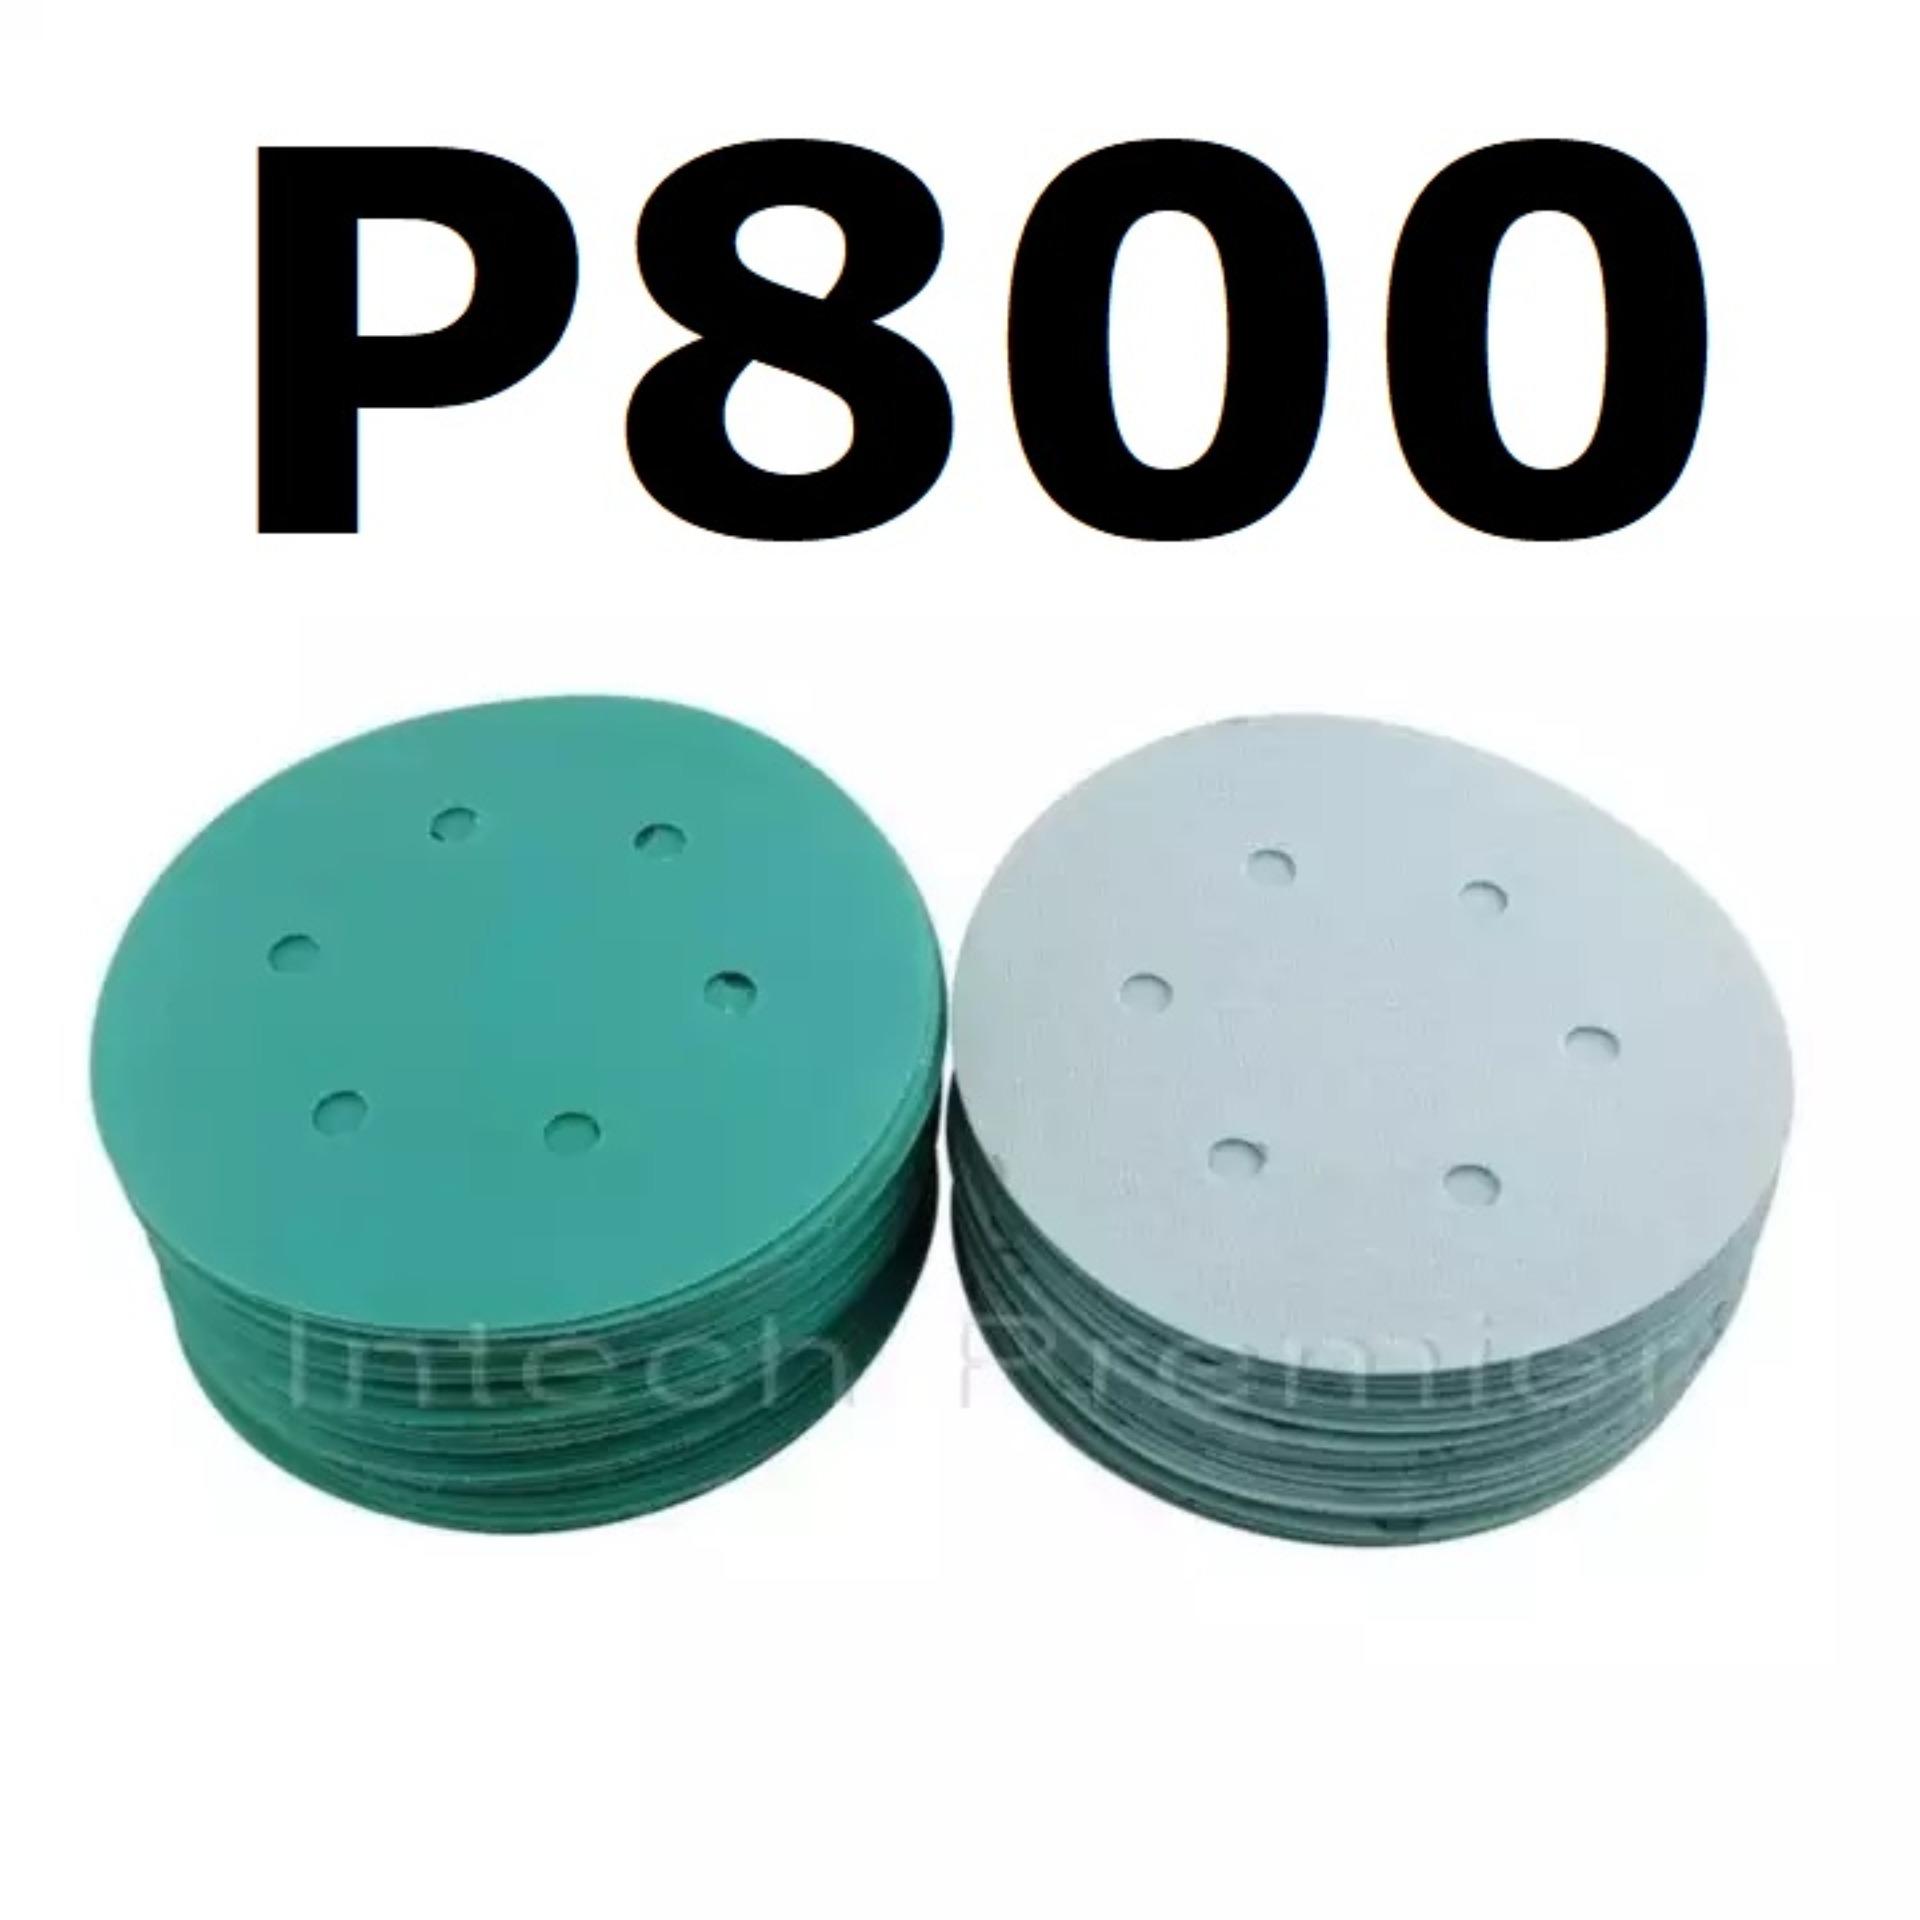 กระดาษทรายกลม P800 6นิ้ว 6รู (100 แผ่น) Hook Velcro Grit Wet/Dry Sanding Discs